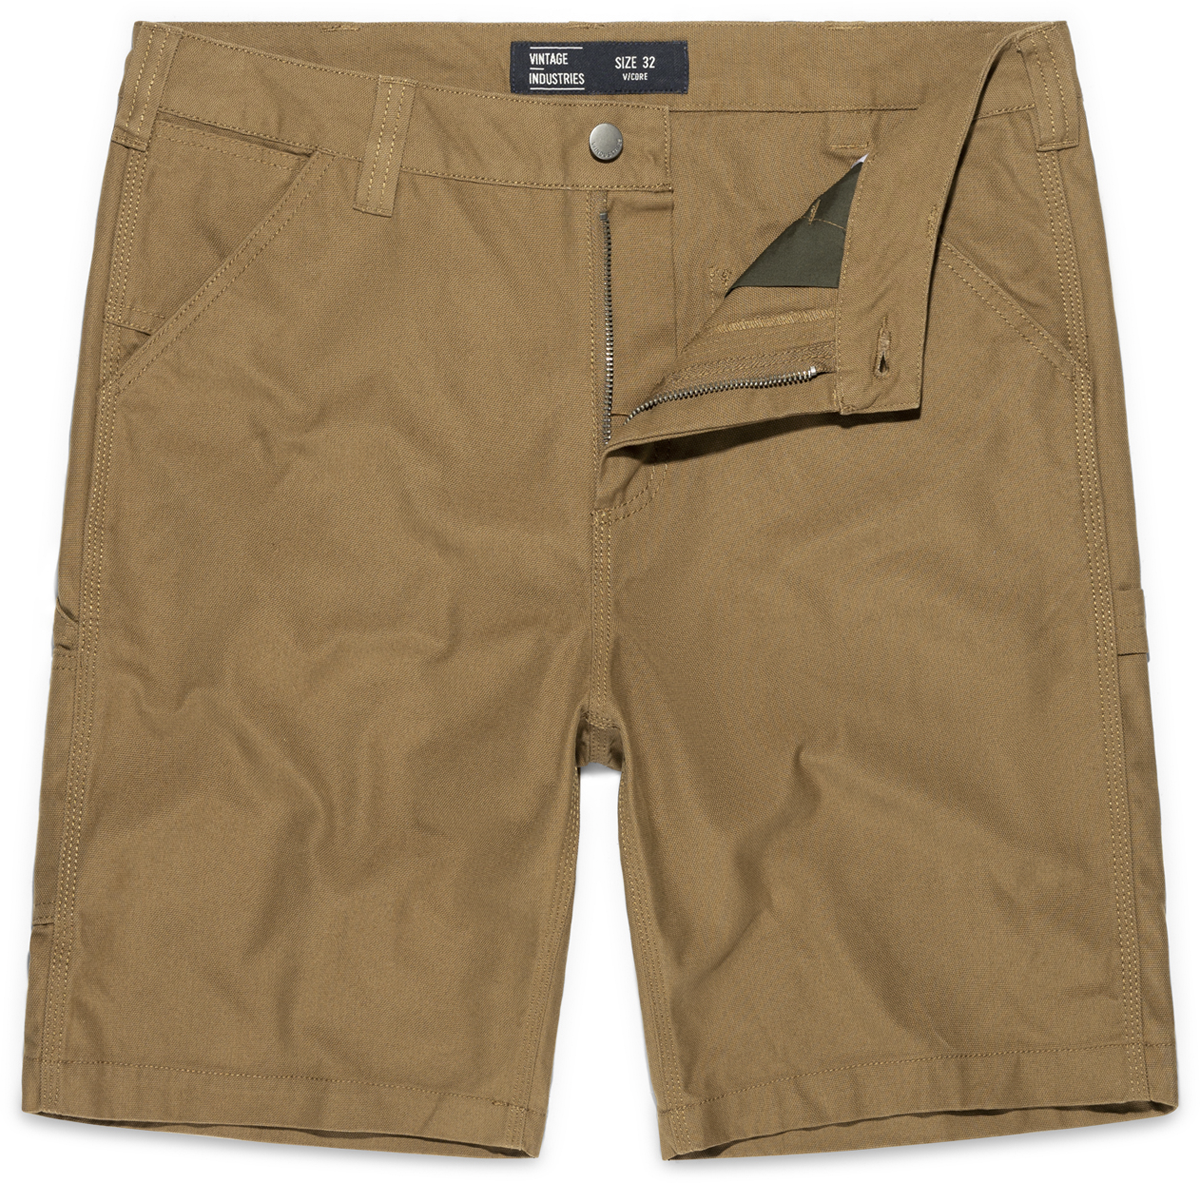 Vintage Industries - Dayton Shorts - Short - beige